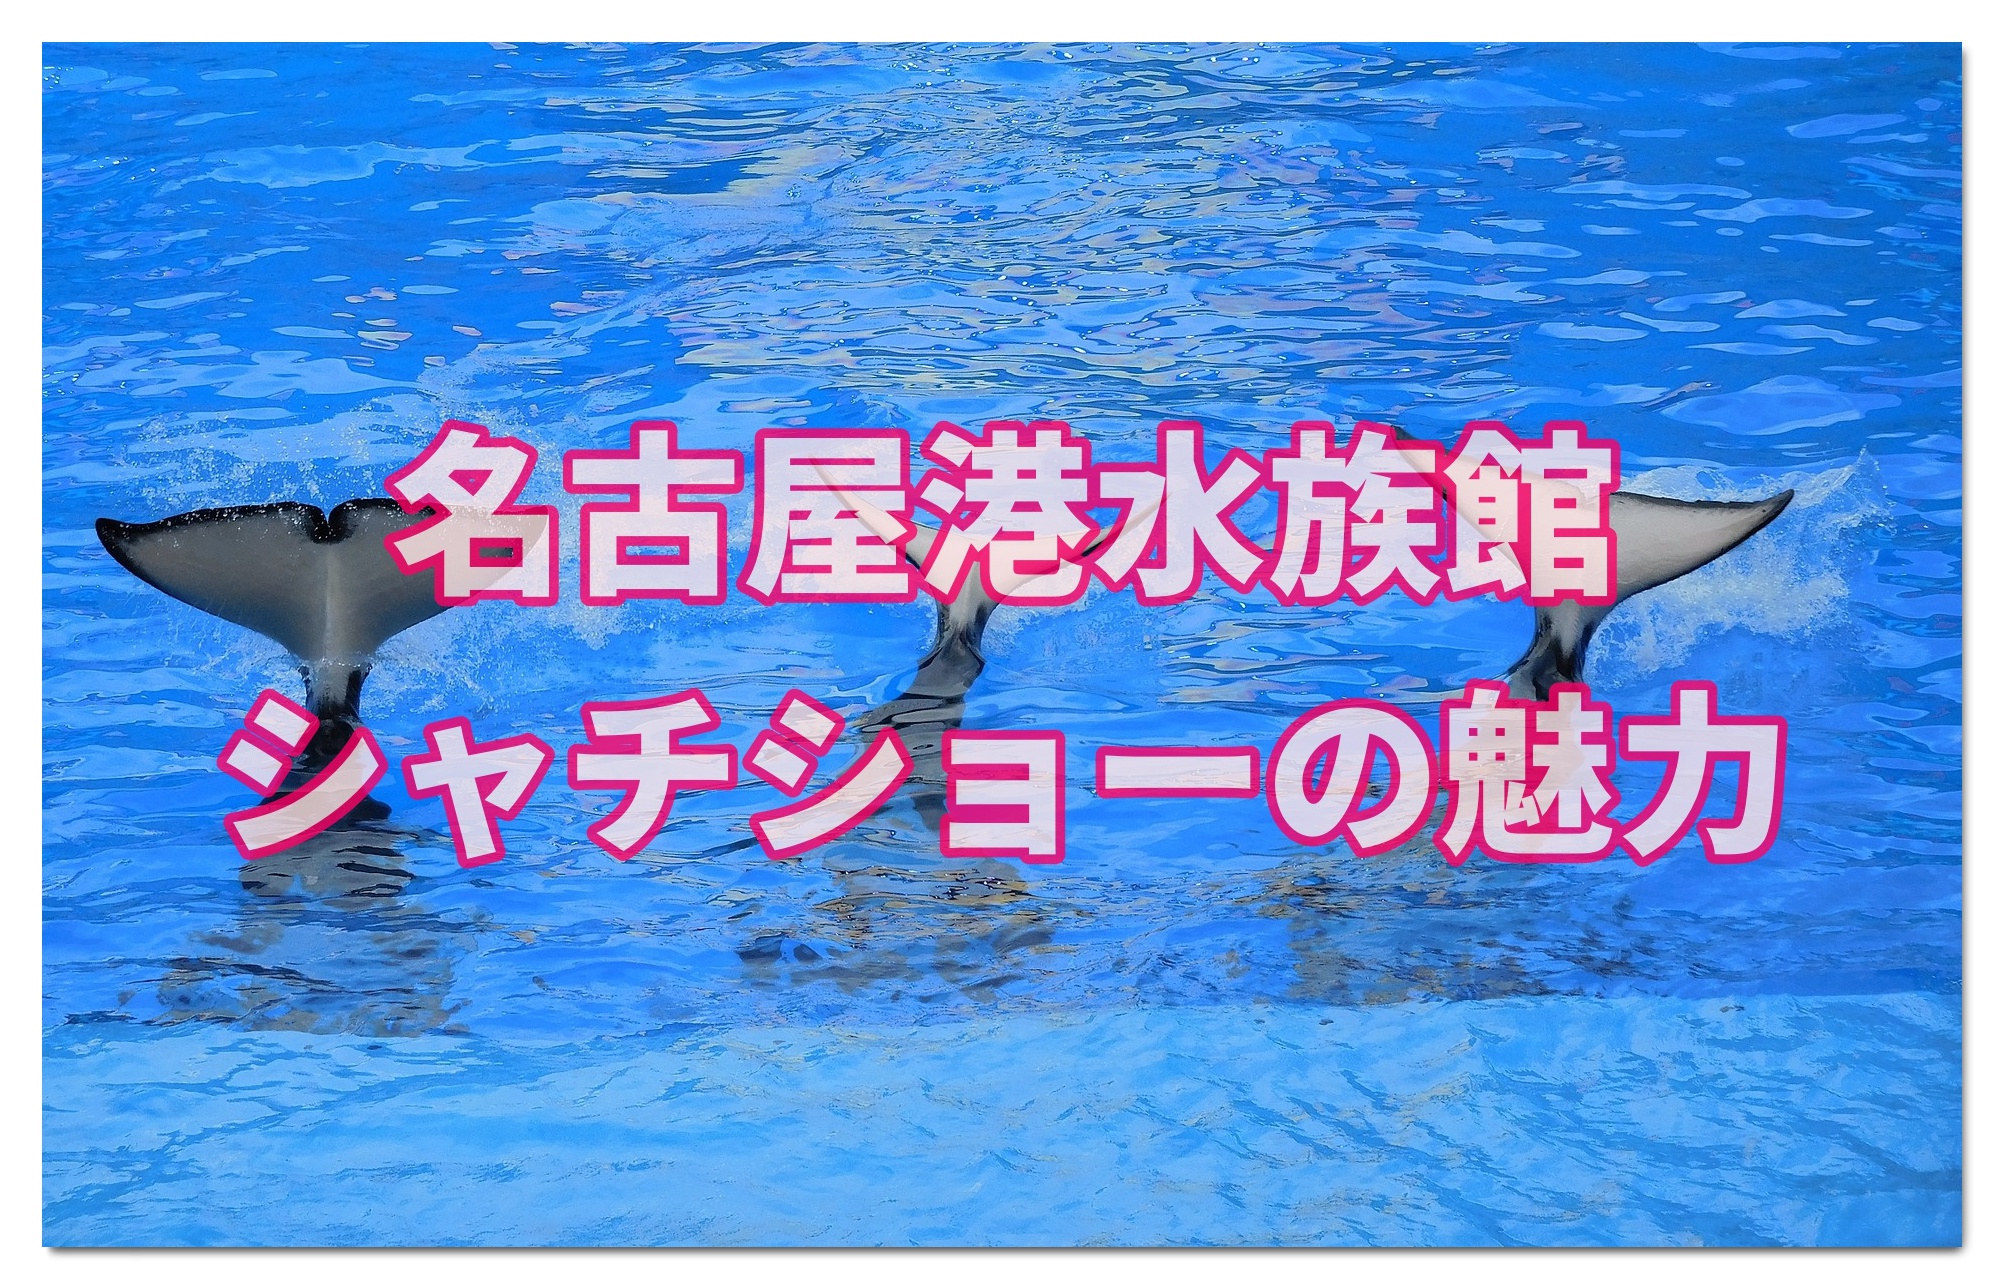 名古屋港水族館はシャチを西日本で唯一観られる貴重な水族館 子連れ旅行を楽しむ鉄板ブログ もう国内旅行は迷わせない